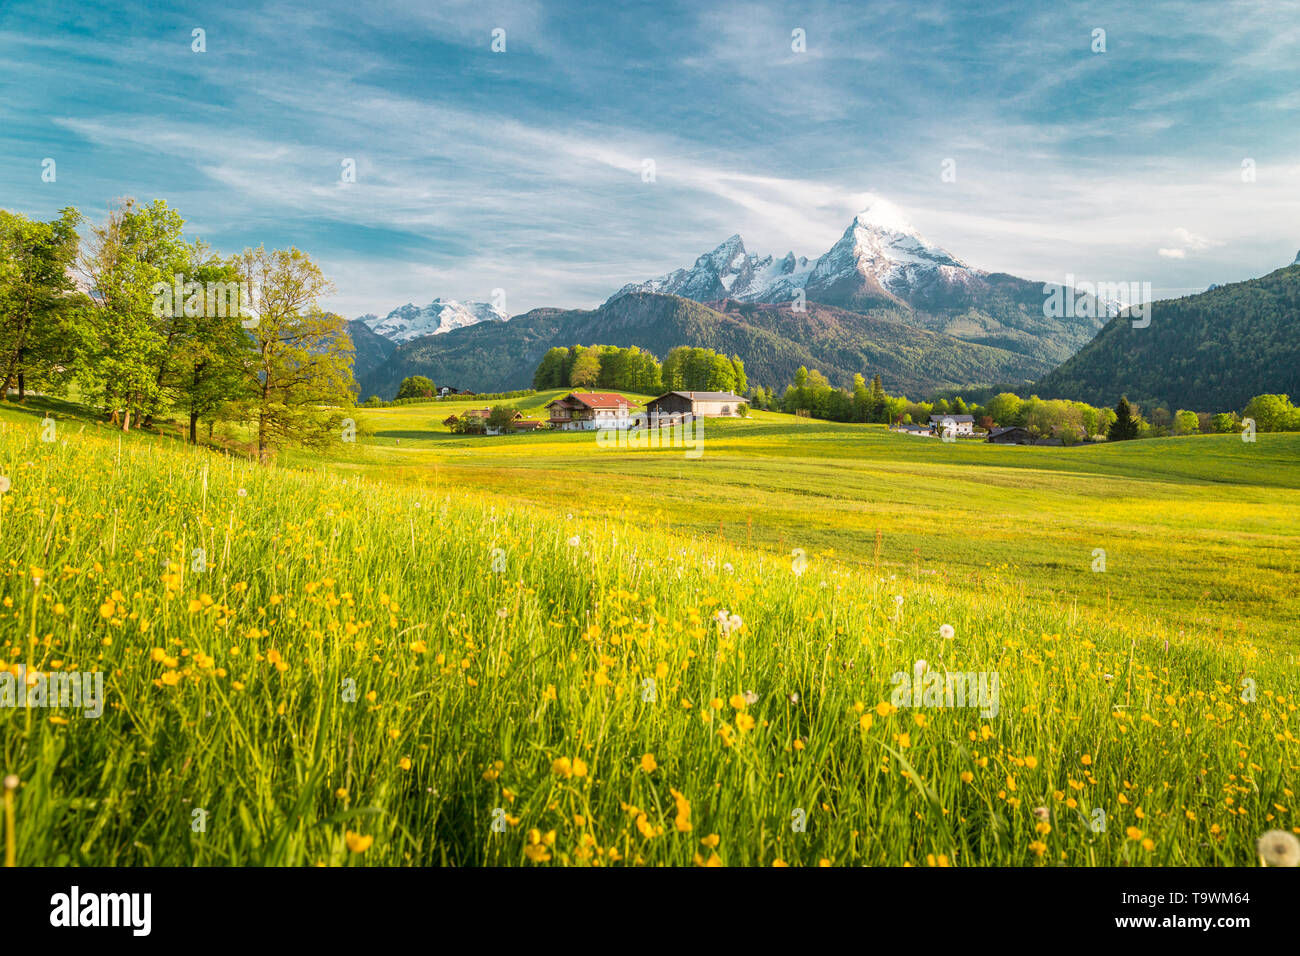 Preciosas vistas del idílico paisaje alpino de montaña con prados en flor y los picos nevados de las montañas en un hermoso día soleado con el cielo azul en la primavera Foto de stock